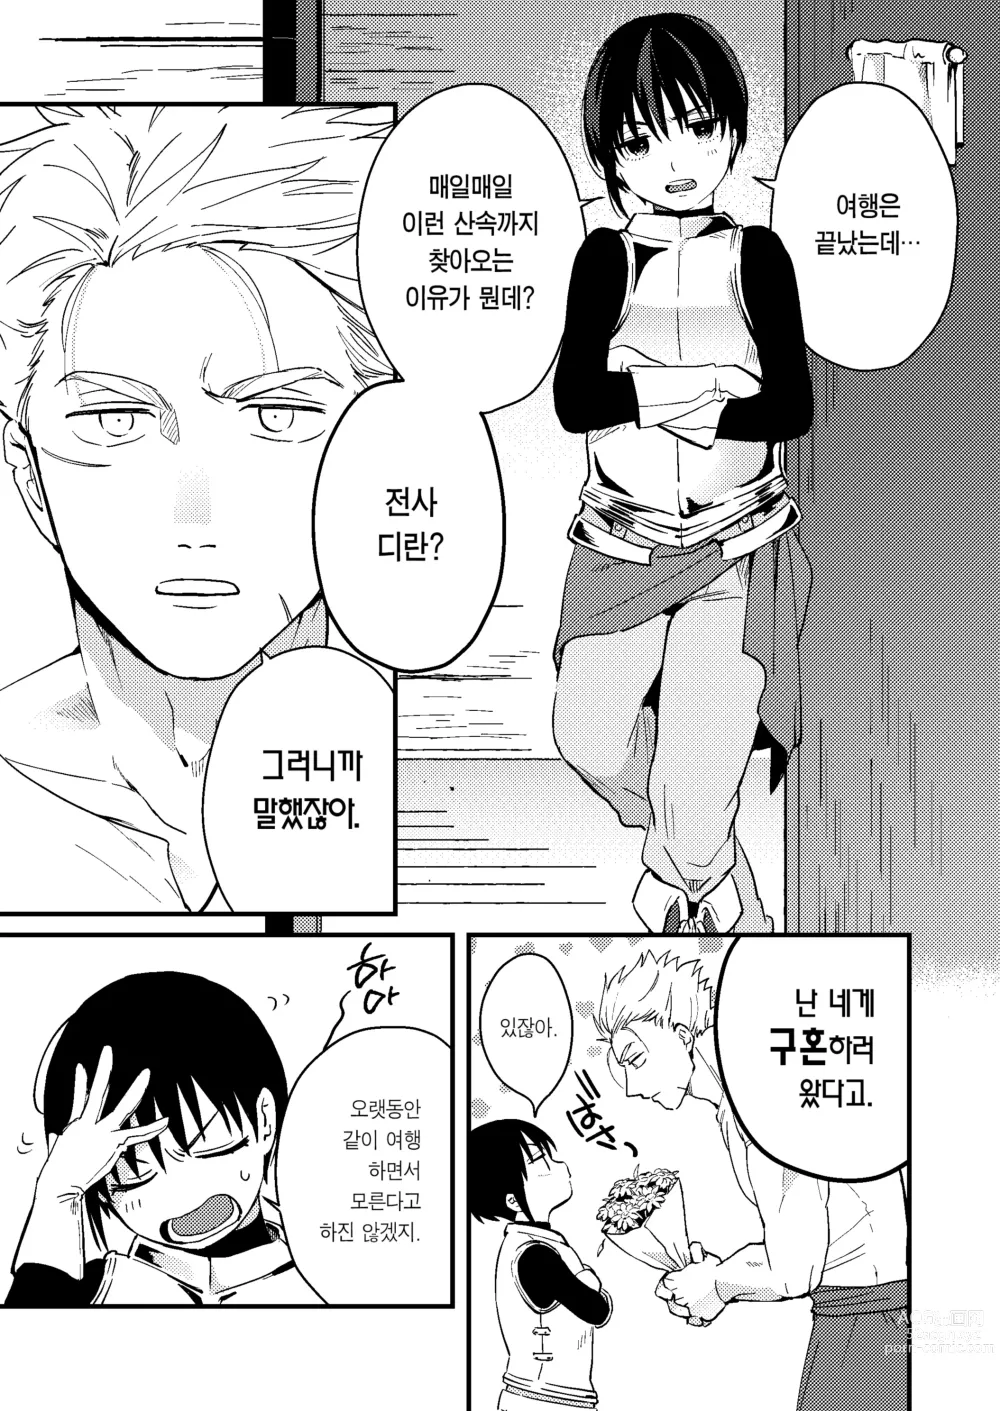 Page 6 of doujinshi 세계가 평화로워져서 용사(사실은 ♀)에게 구혼한 결과